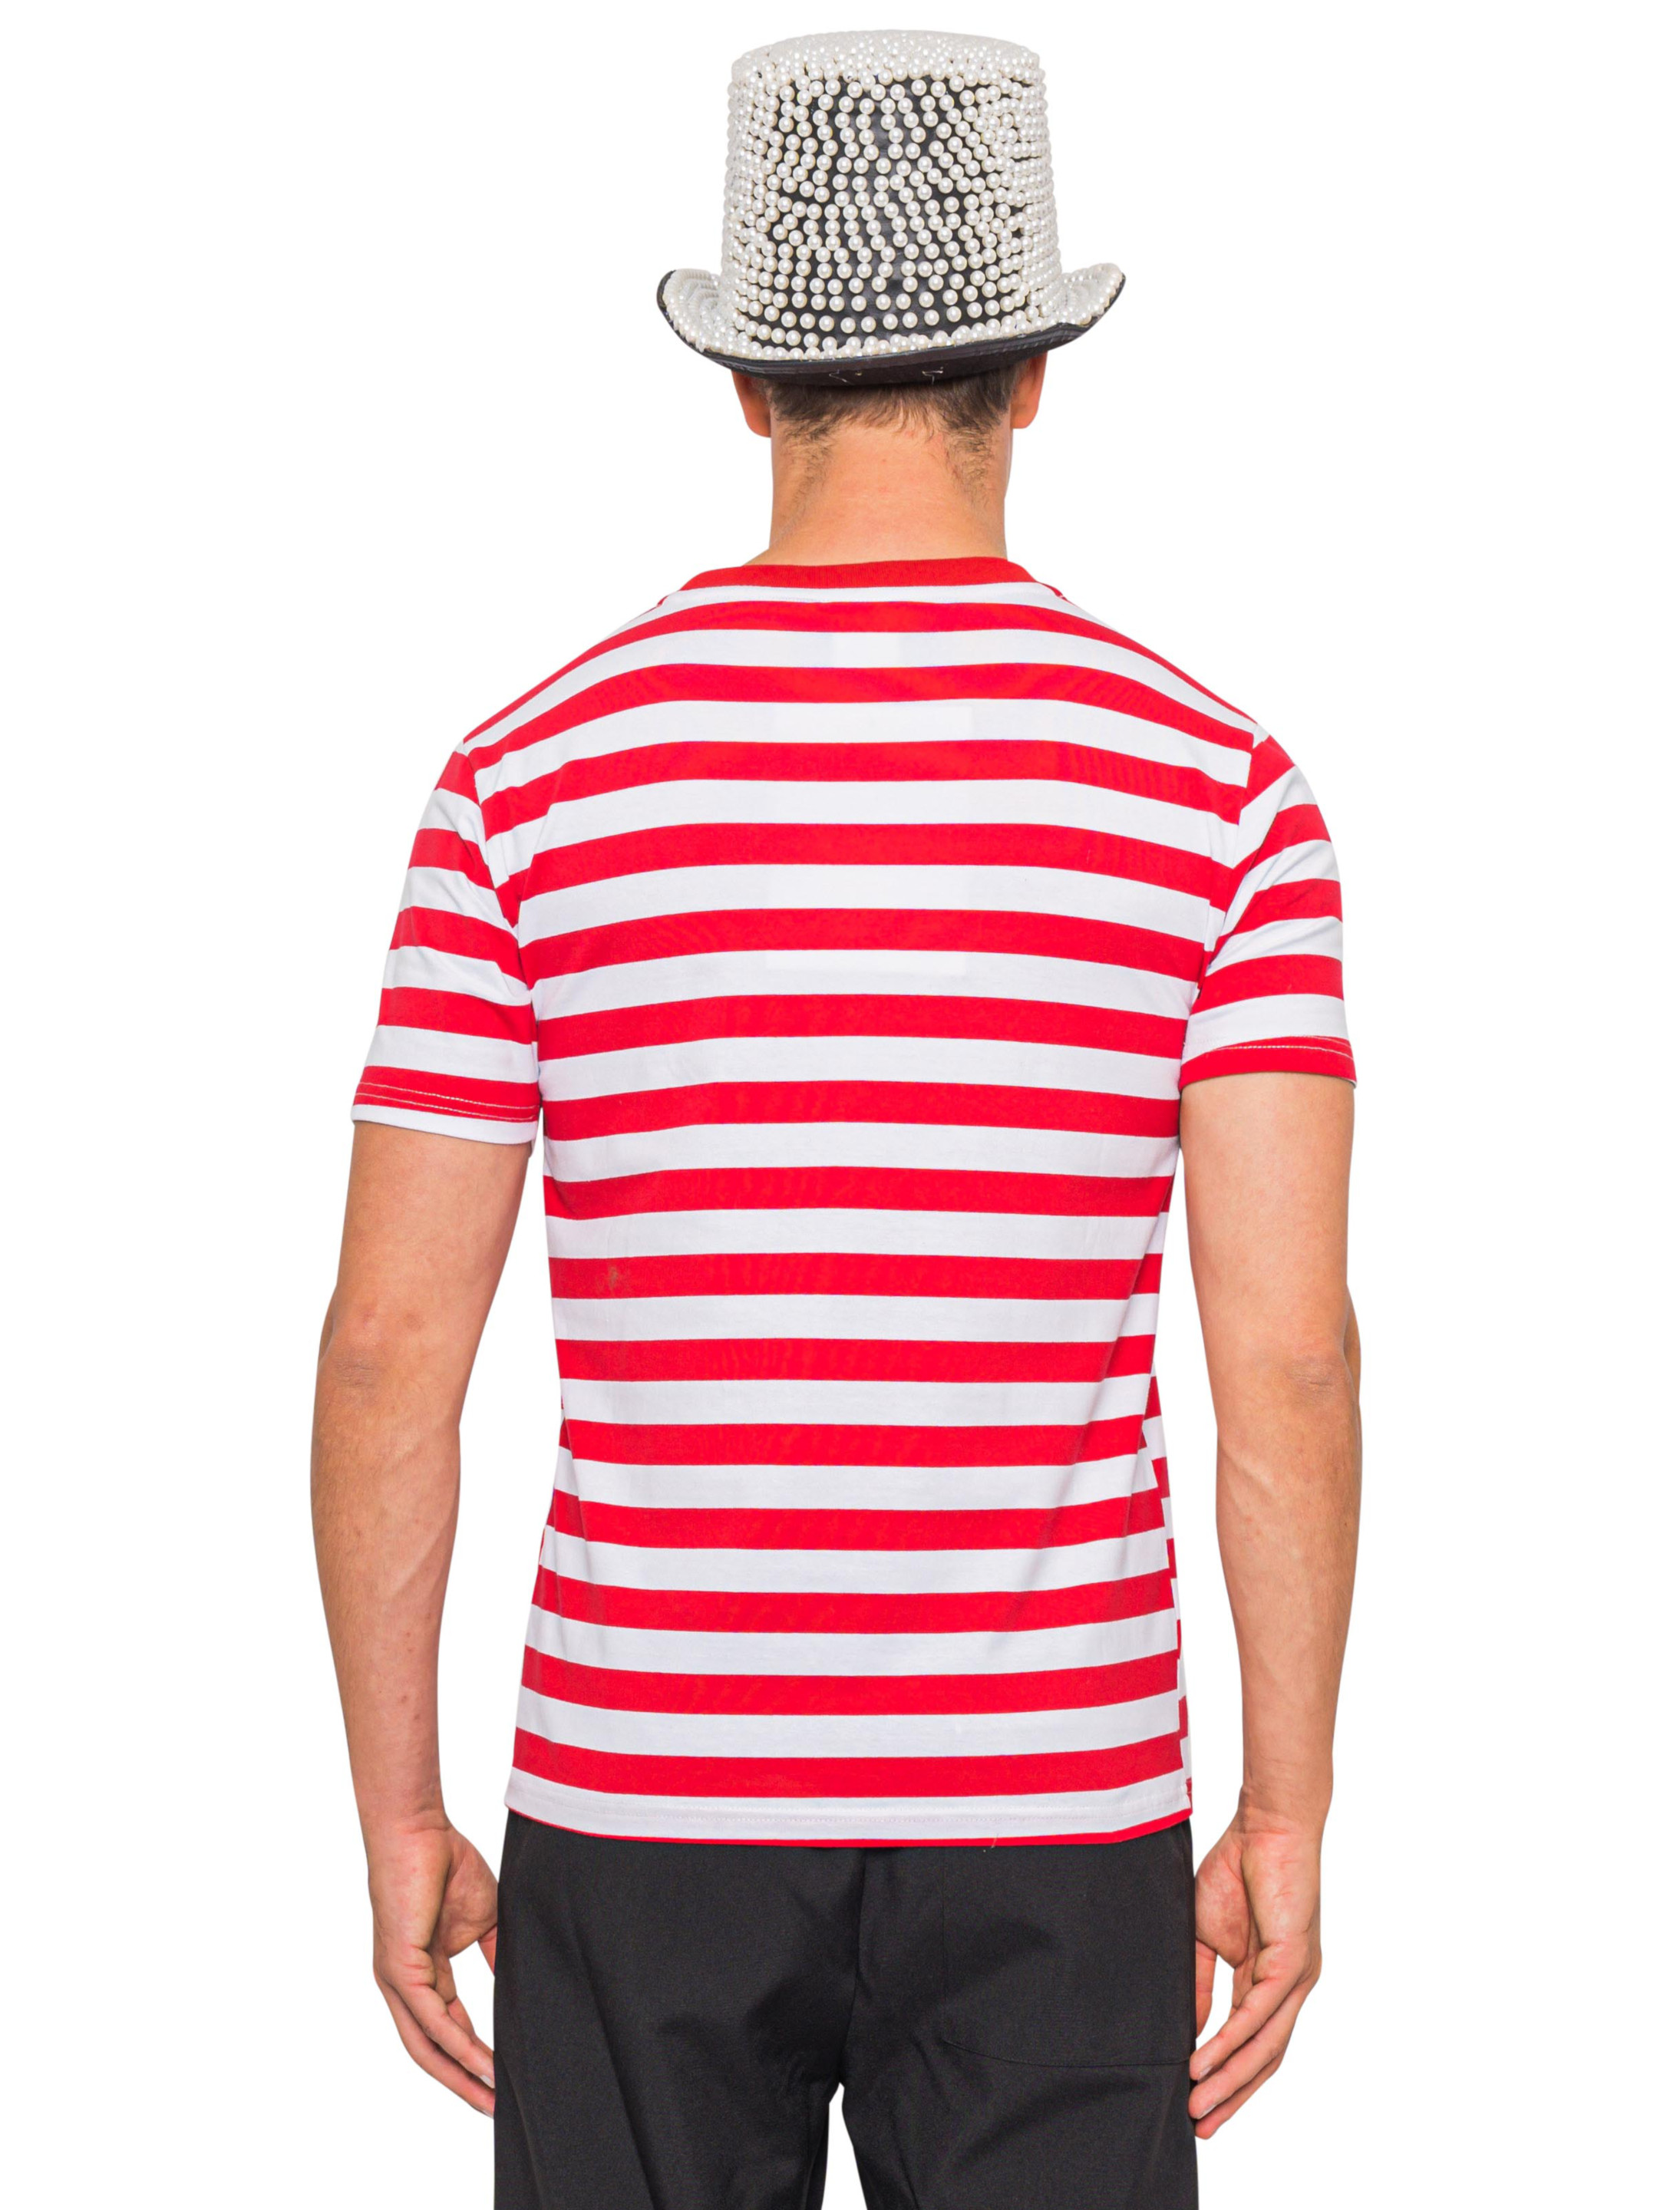 T-Shirt mit Dom Herren rot/weiß 2XL